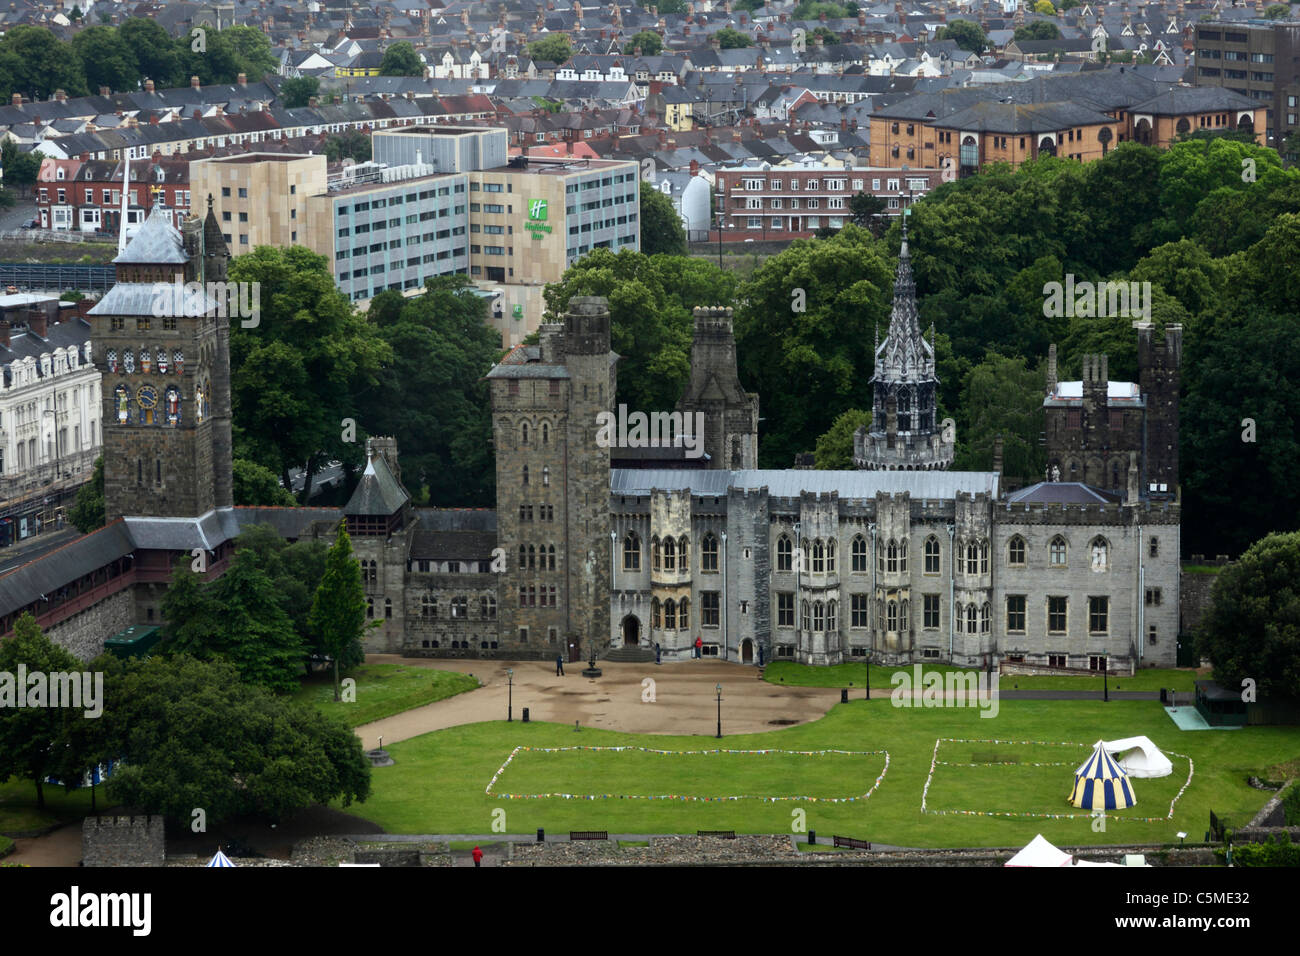 Vista aerea della residenza vittoriana in stile gotico e della torre dell'orologio (L) del Castello di Cardiff, tratta da un alto edificio nelle vicinanze, Cardiff, Galles Foto Stock